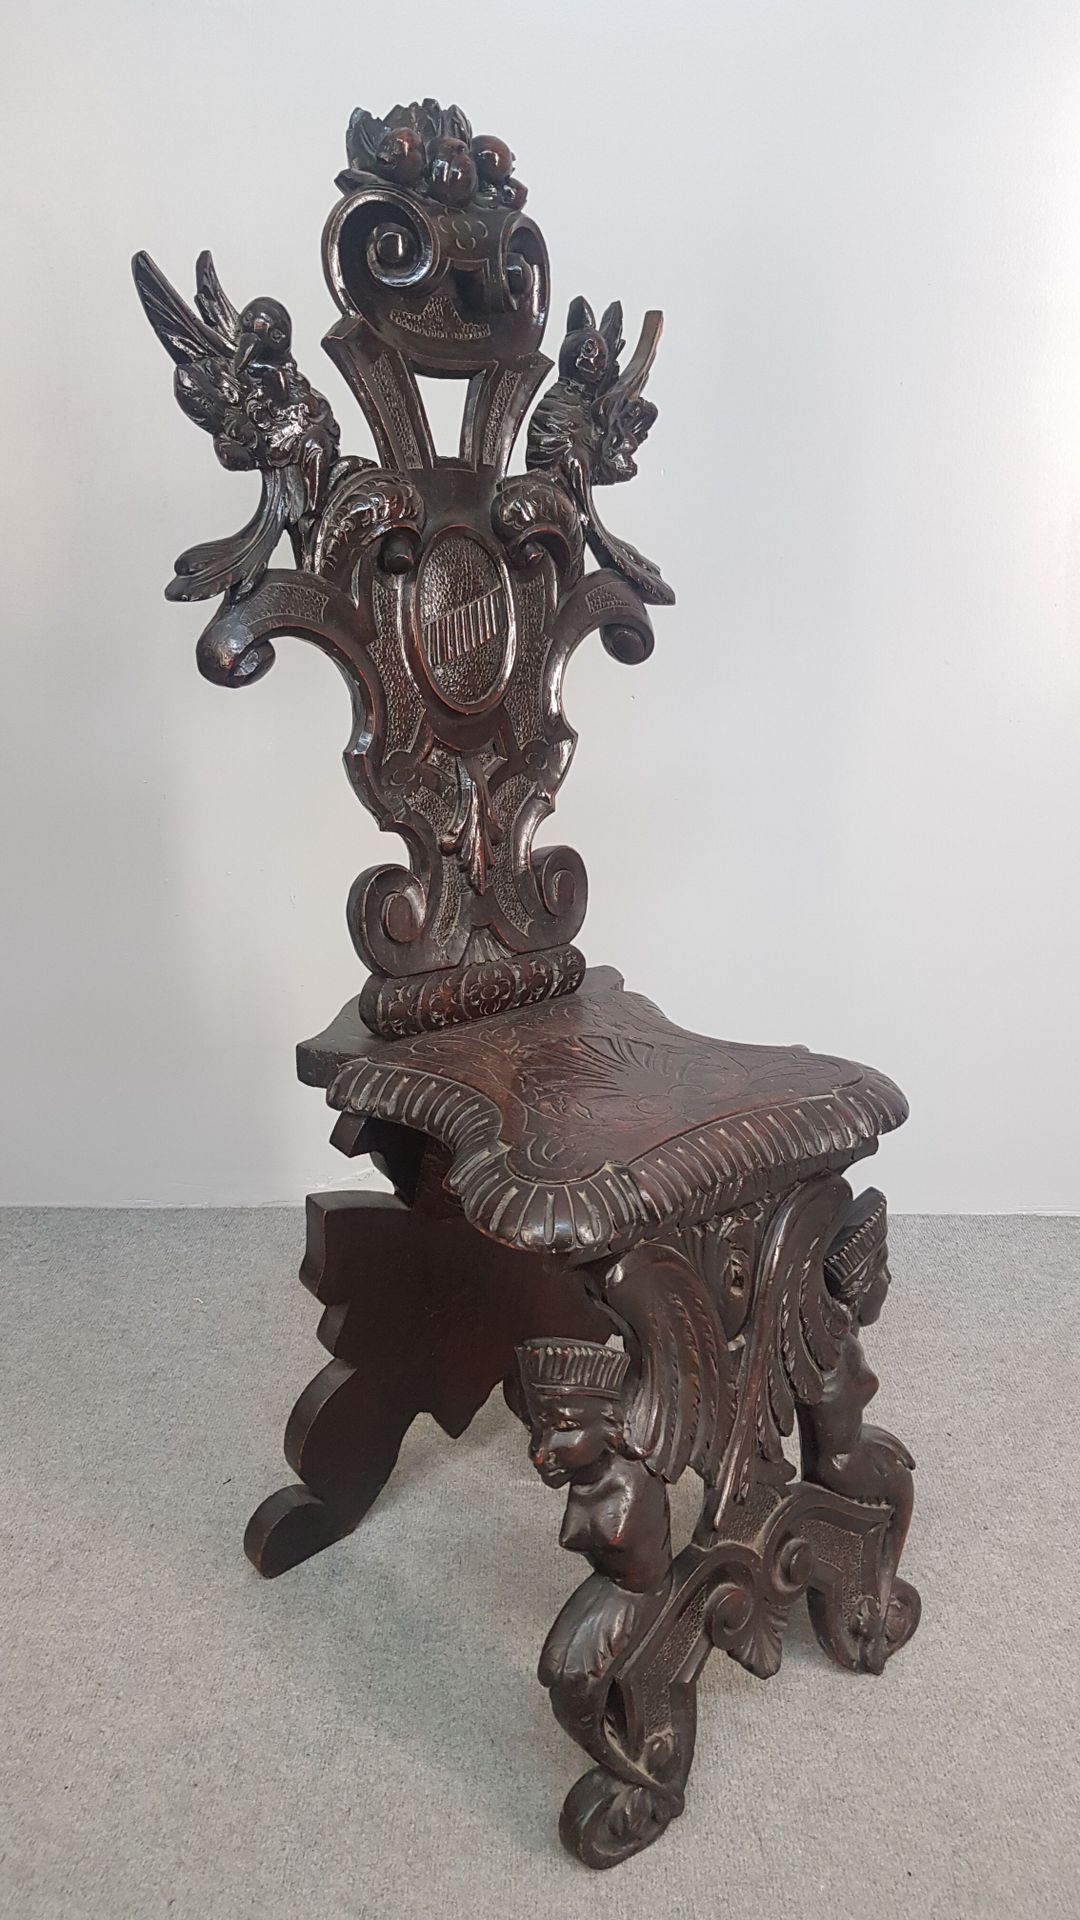 Null 一把发黑和染色的橡木效果的木椅，椅背上有丰富的鸟类、奖章和植被的雕刻装饰，正面底座上有翅膀的人物轮廓，座椅上有雕刻的图案。意大利作品，19-20世纪。&hellip;